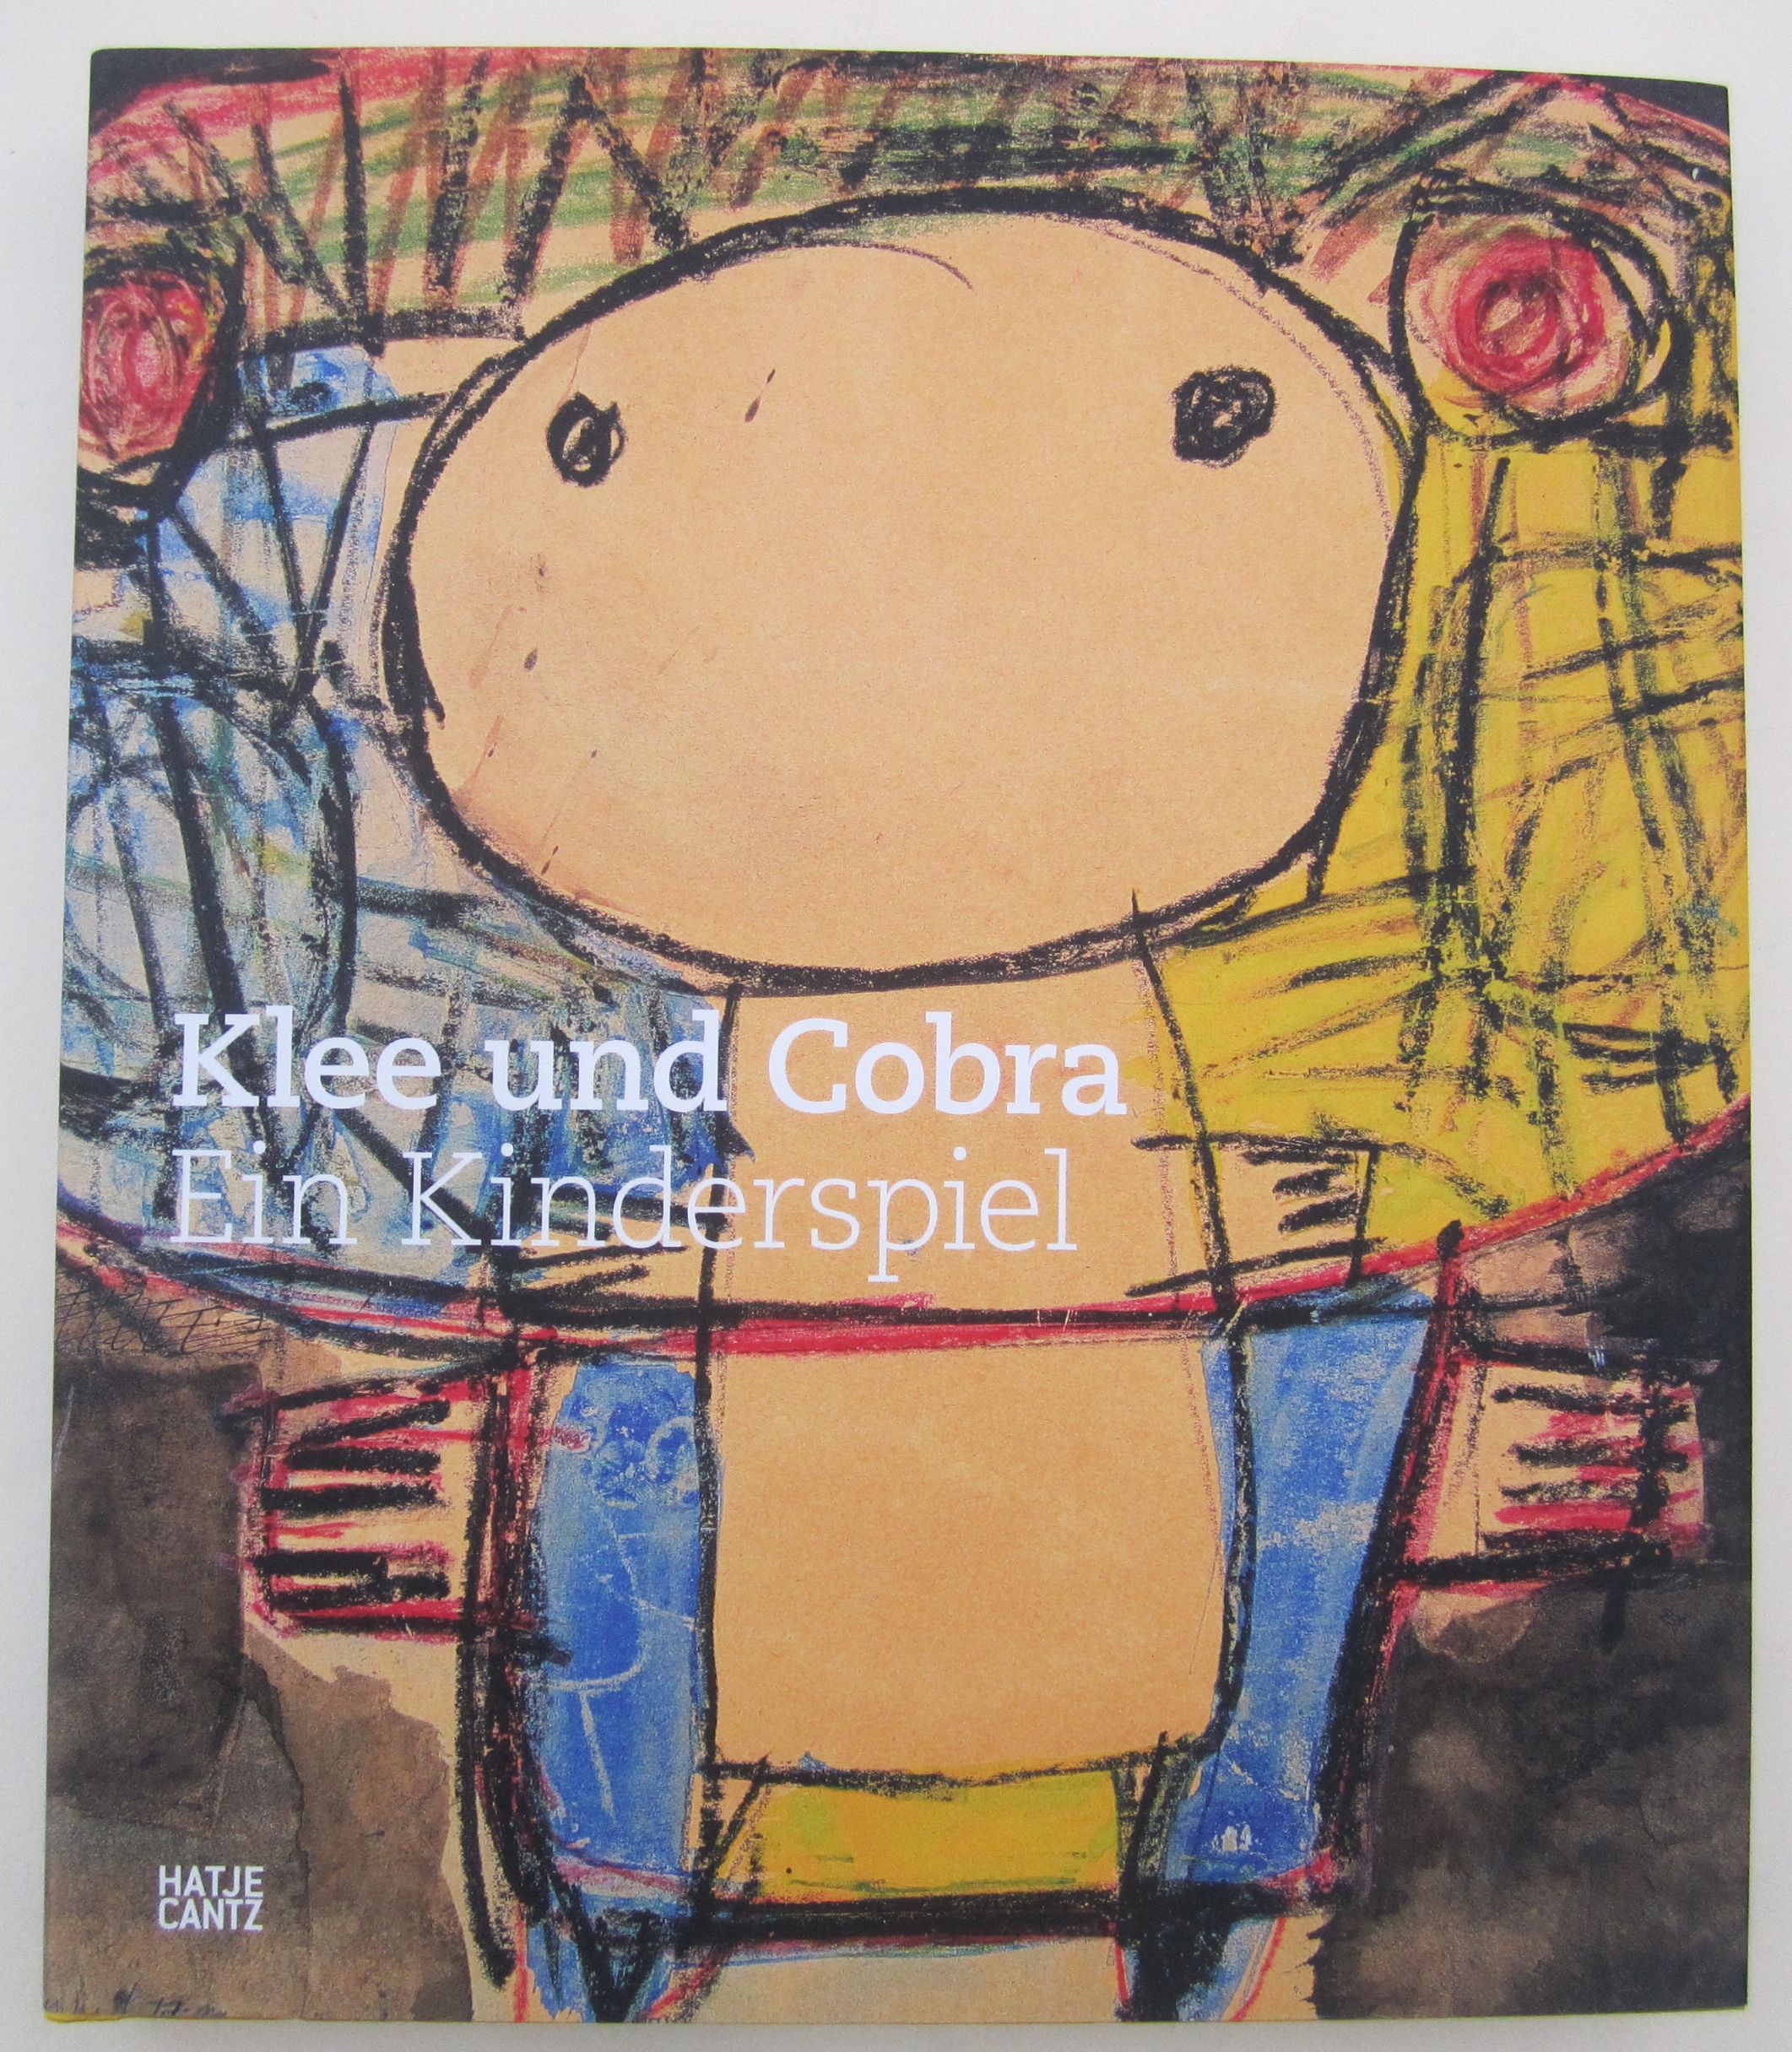 Klee und Cobra. Ein Kinderspiel. - Zentrum Paul Klee, Bern (Hrsg.)